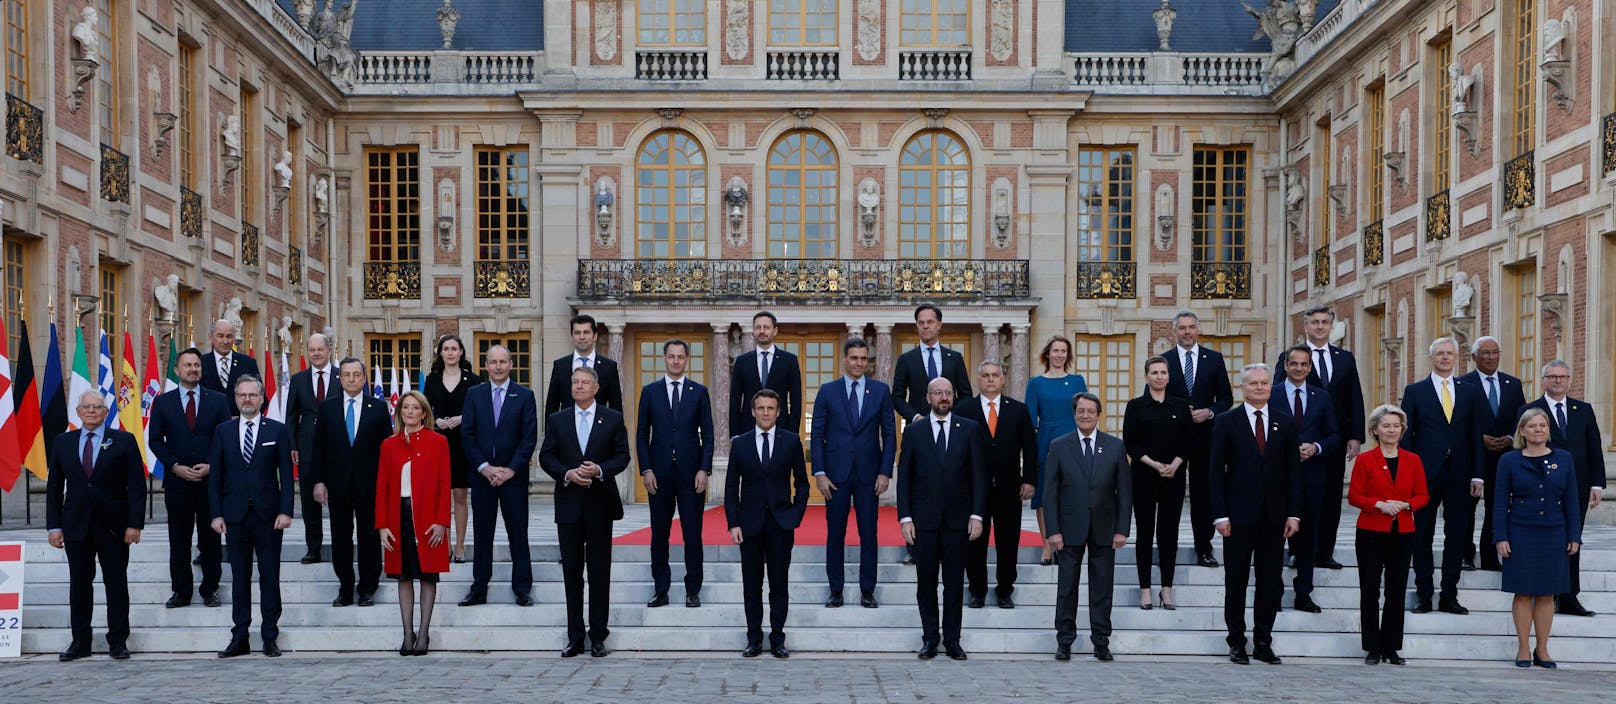 Die 24 EU-Staats- und Regierungschefs vor dem Pariser Schloss Versailles.